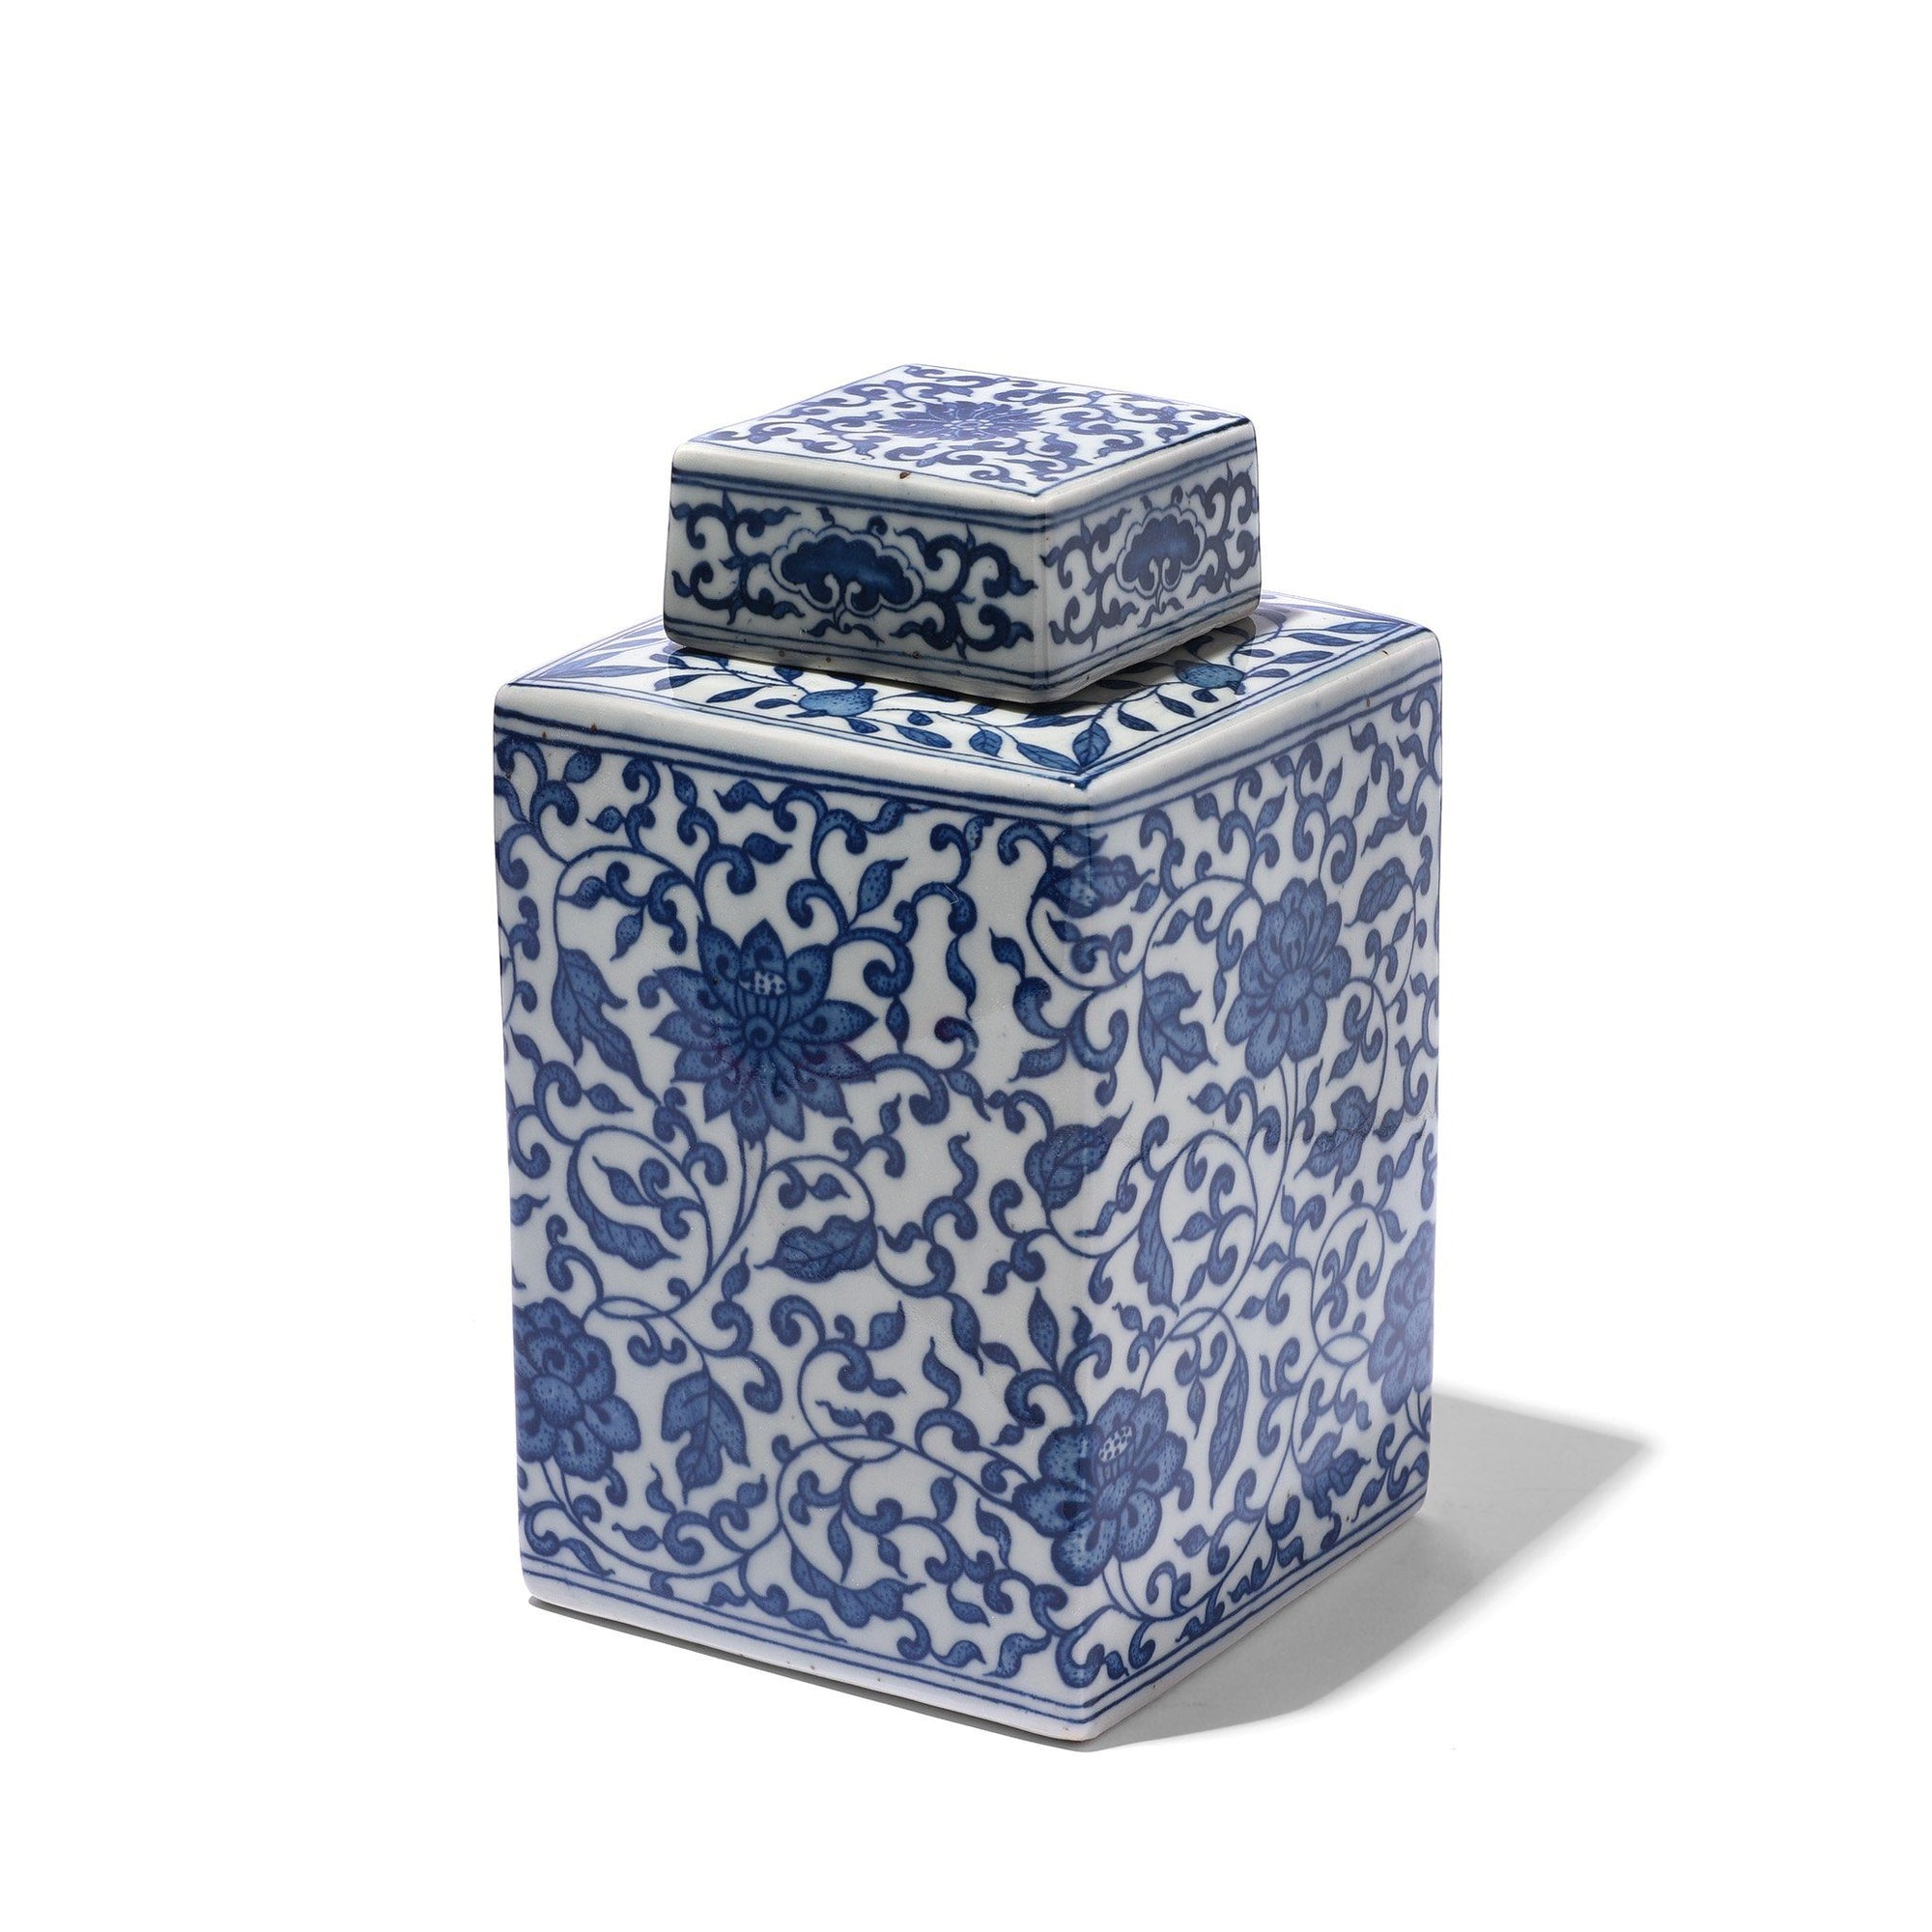 Blue And White Porcelain Tea Caddy - Peony Design | Indigo Antiques